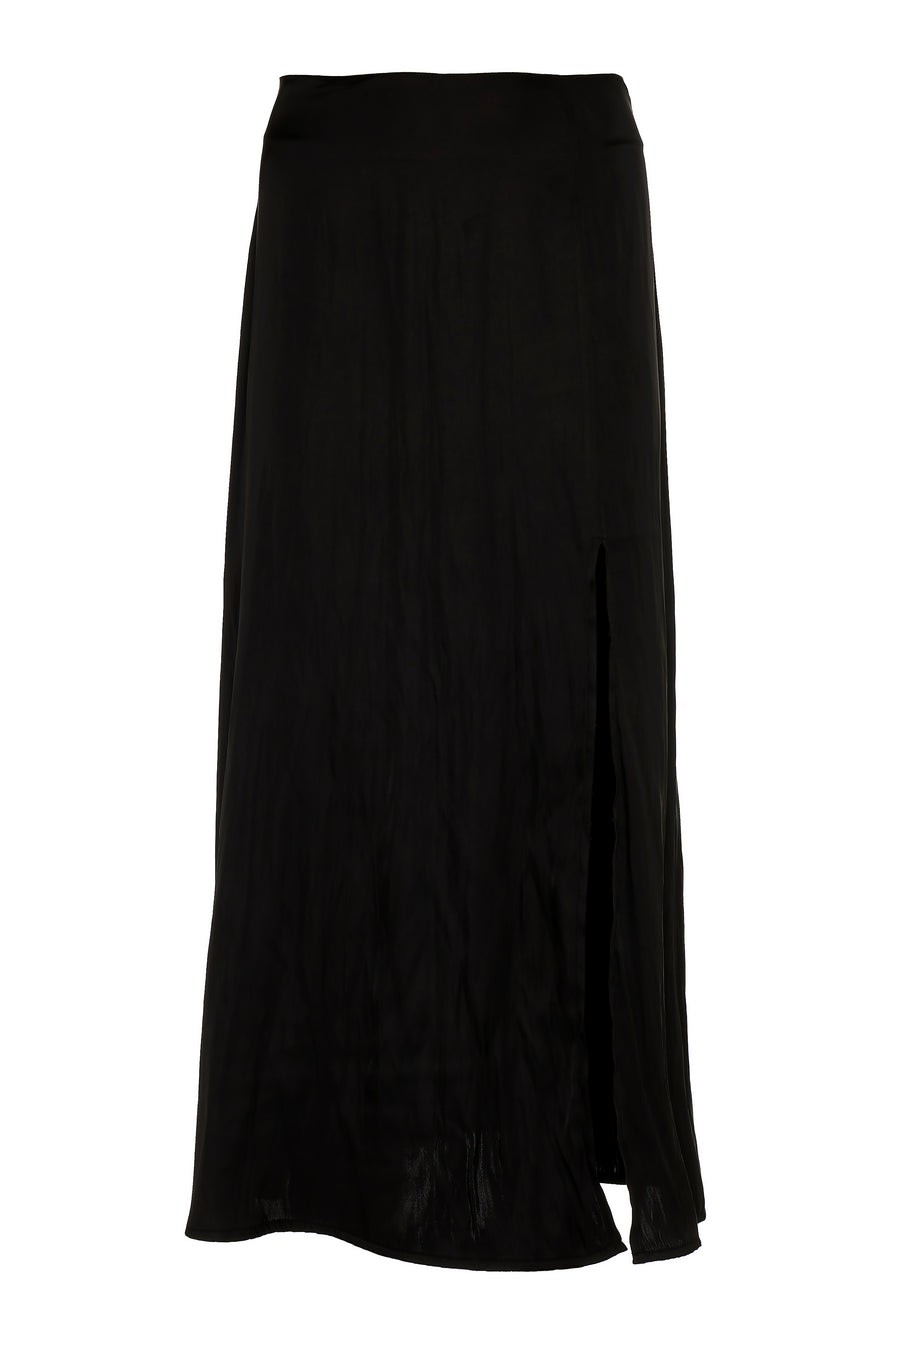 NMW Annaliese skirt (Black)